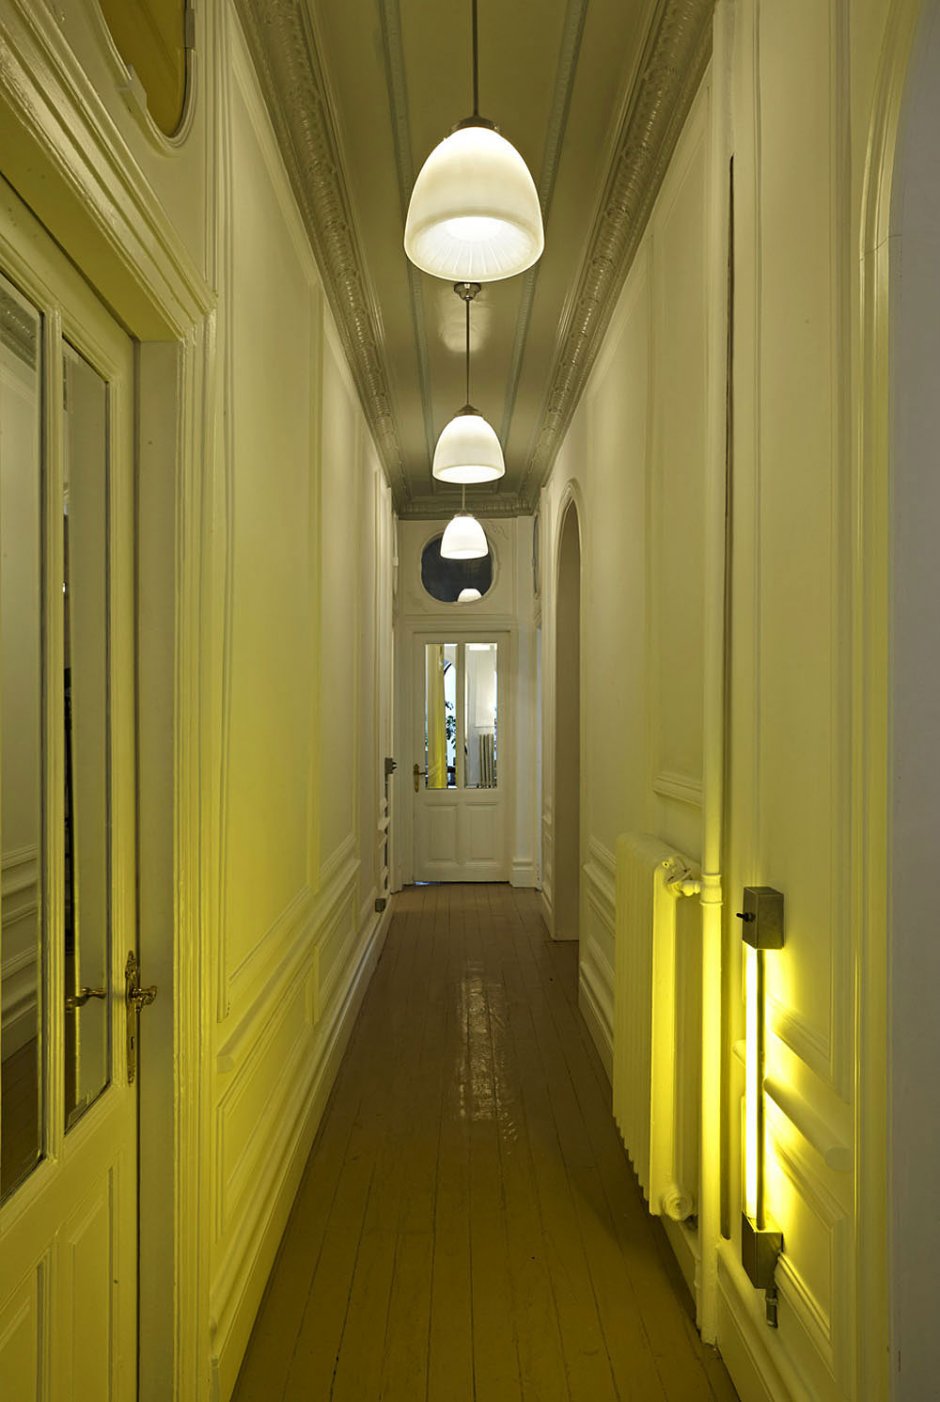 Светильники в длинный коридор